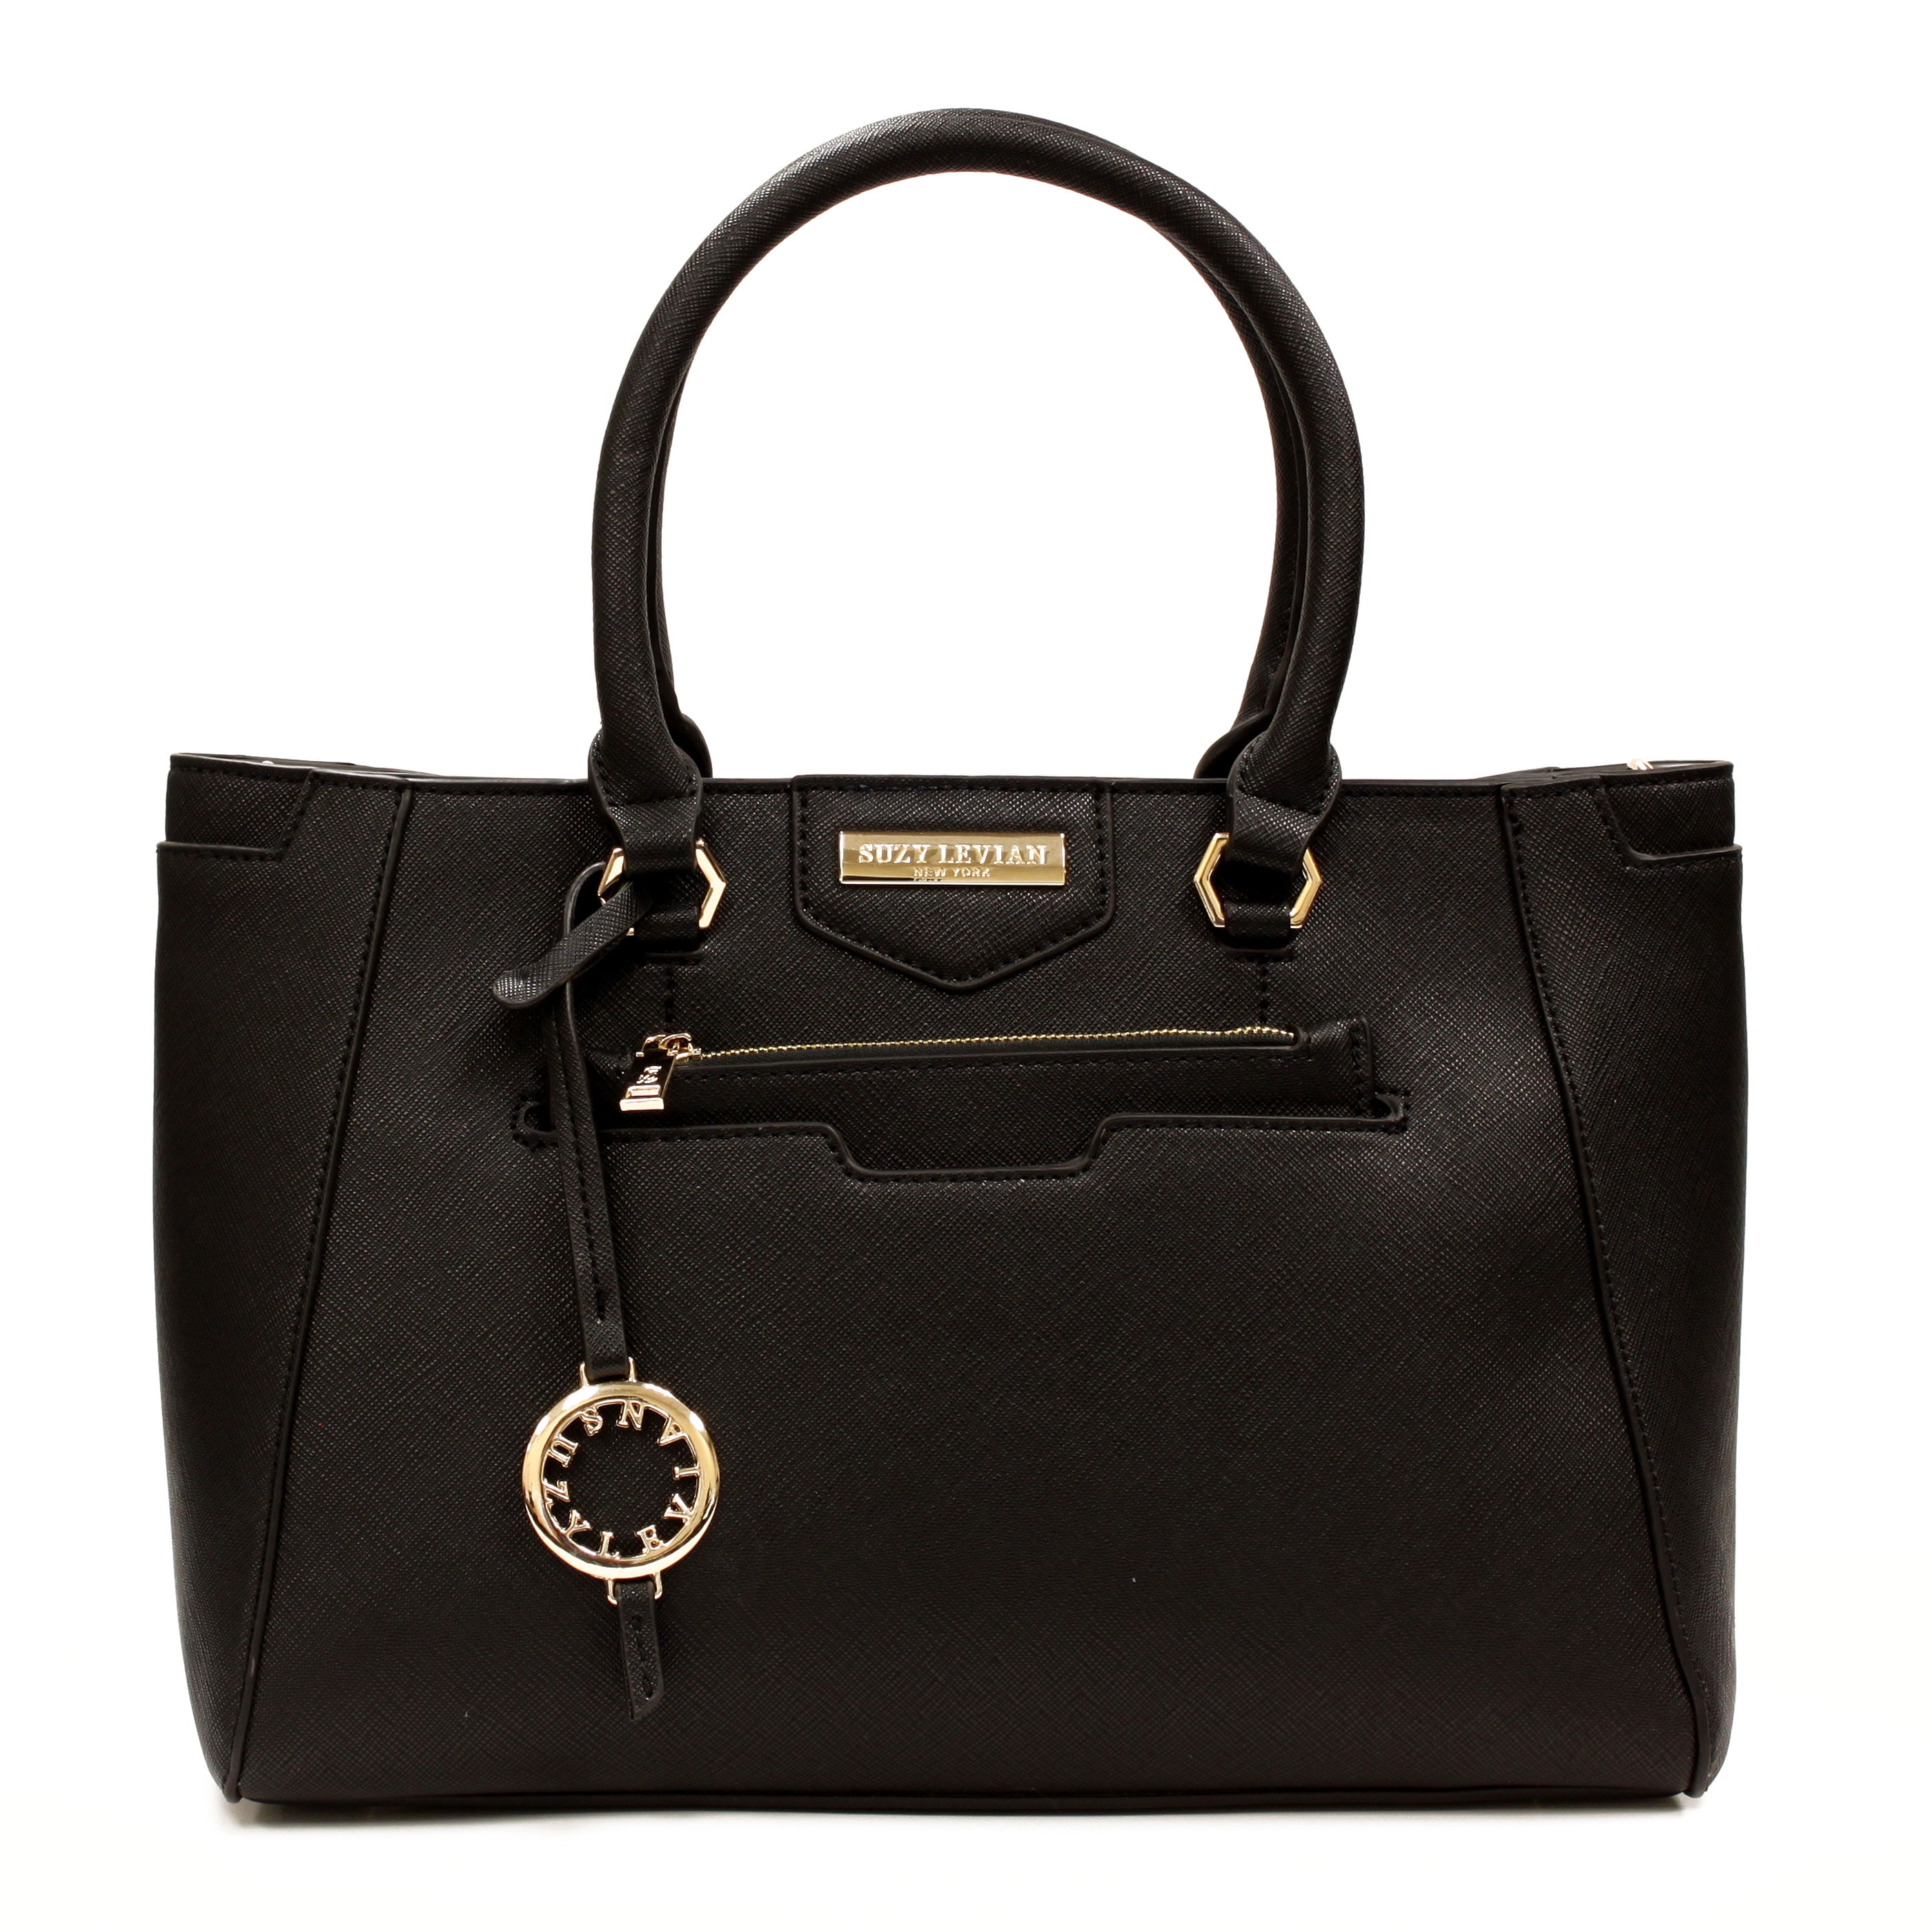 Suzy Levian Black Saffiano Faux Leather Satchel Handbag - Walmart.com ...